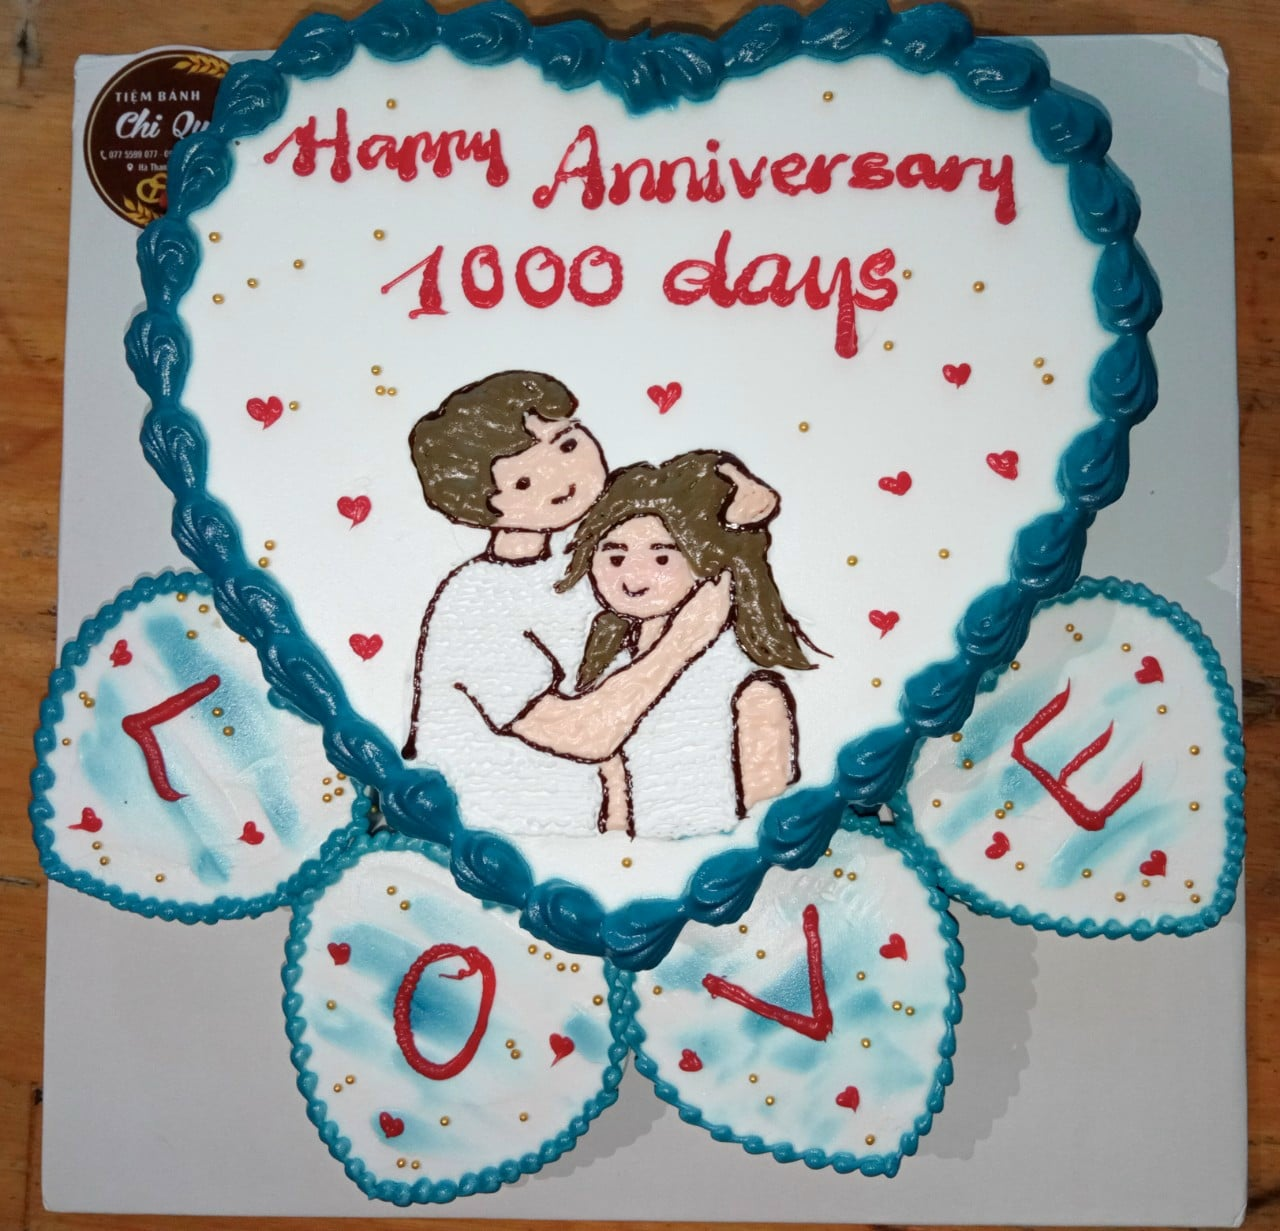 Bánh kem kỉ niệm 1000 ngày yêu nhau - Bánh kem Tony